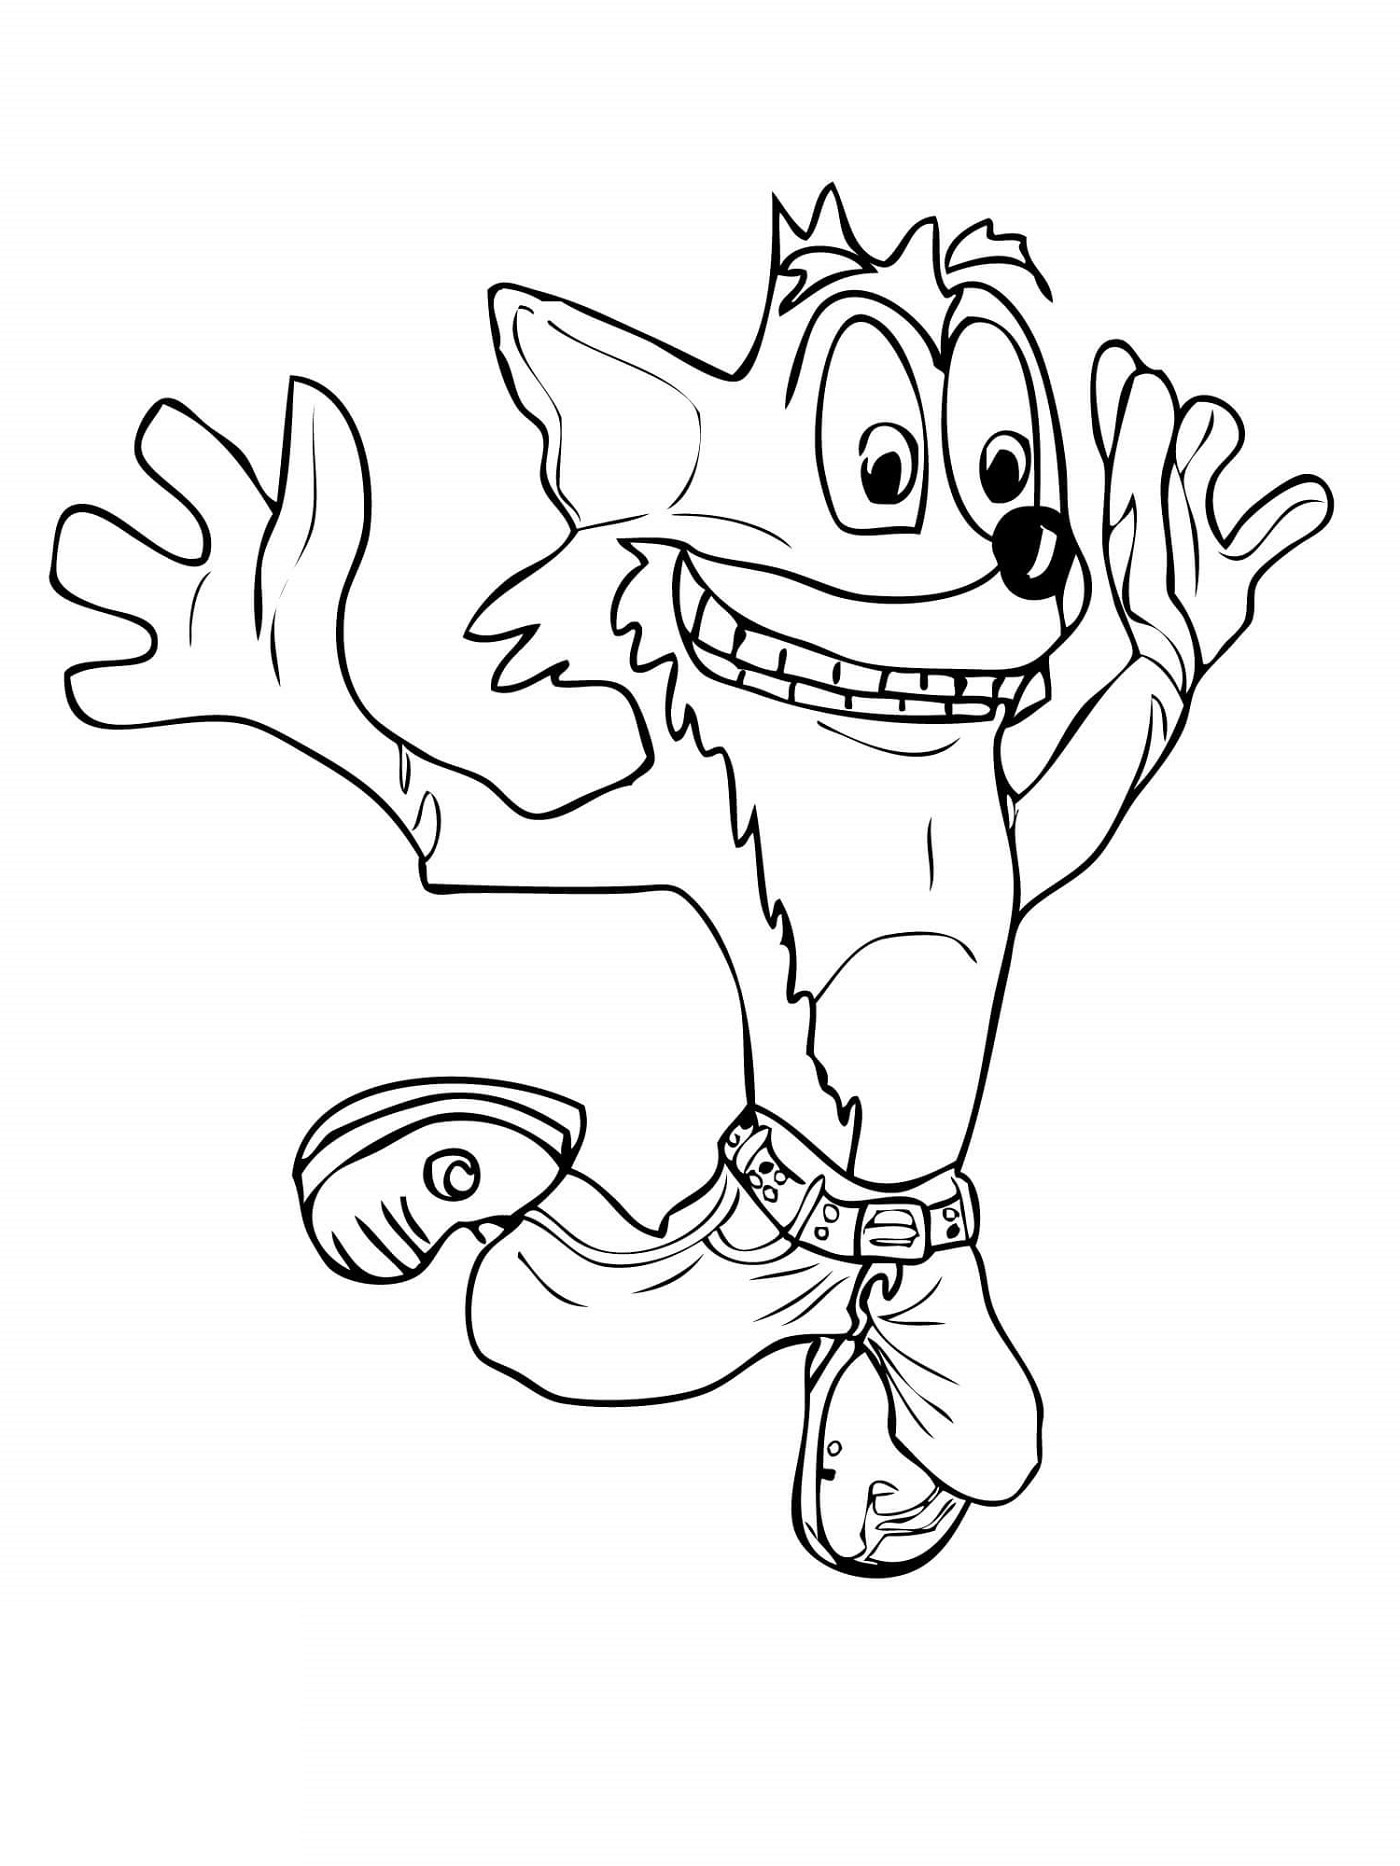 Jumping Crash Bandicoot Coloring Page